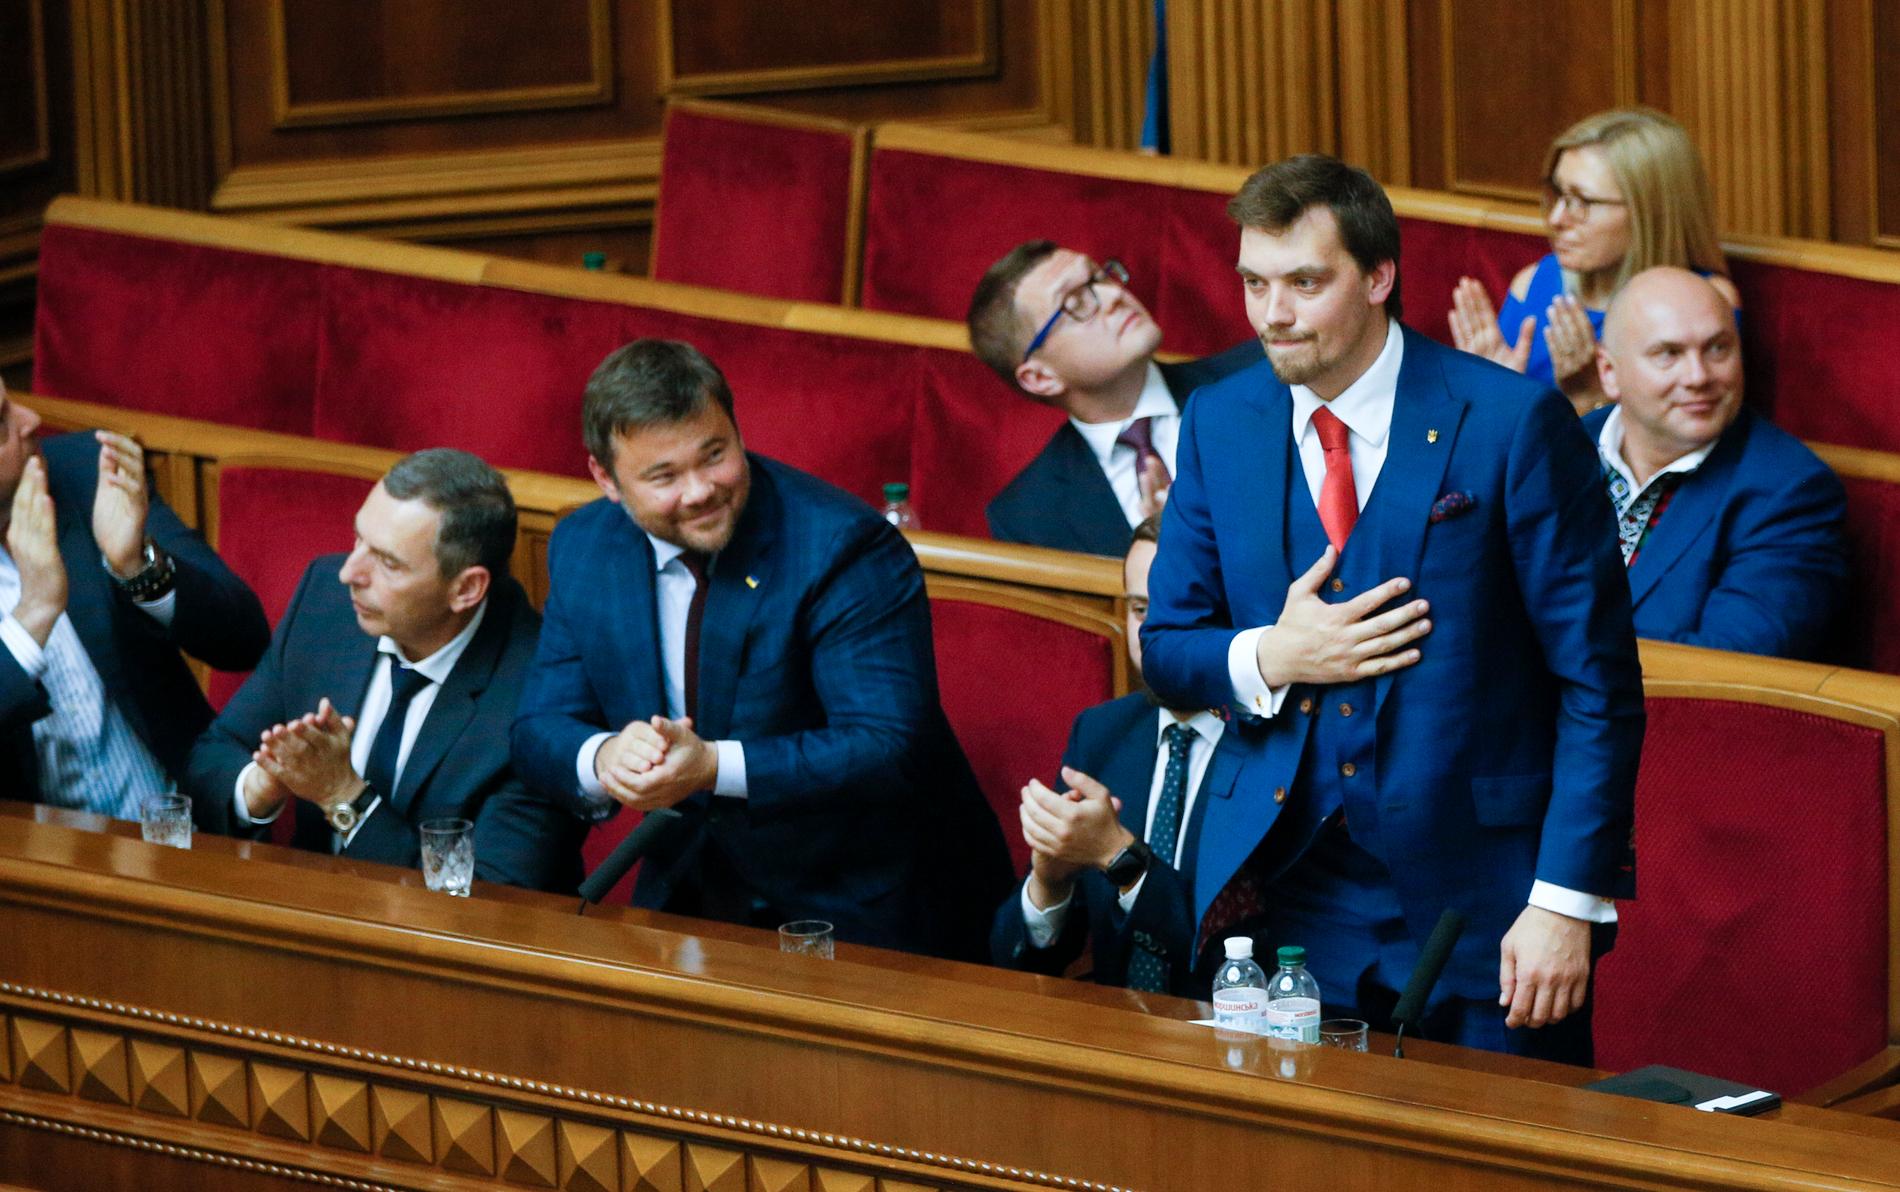 Parlamentet i Ukraina godkände på torsdagen president Zelenskyjs förslag till premiärminister – den 35-årige juristen Oleksij j Hontjaruk (stående i bilden).